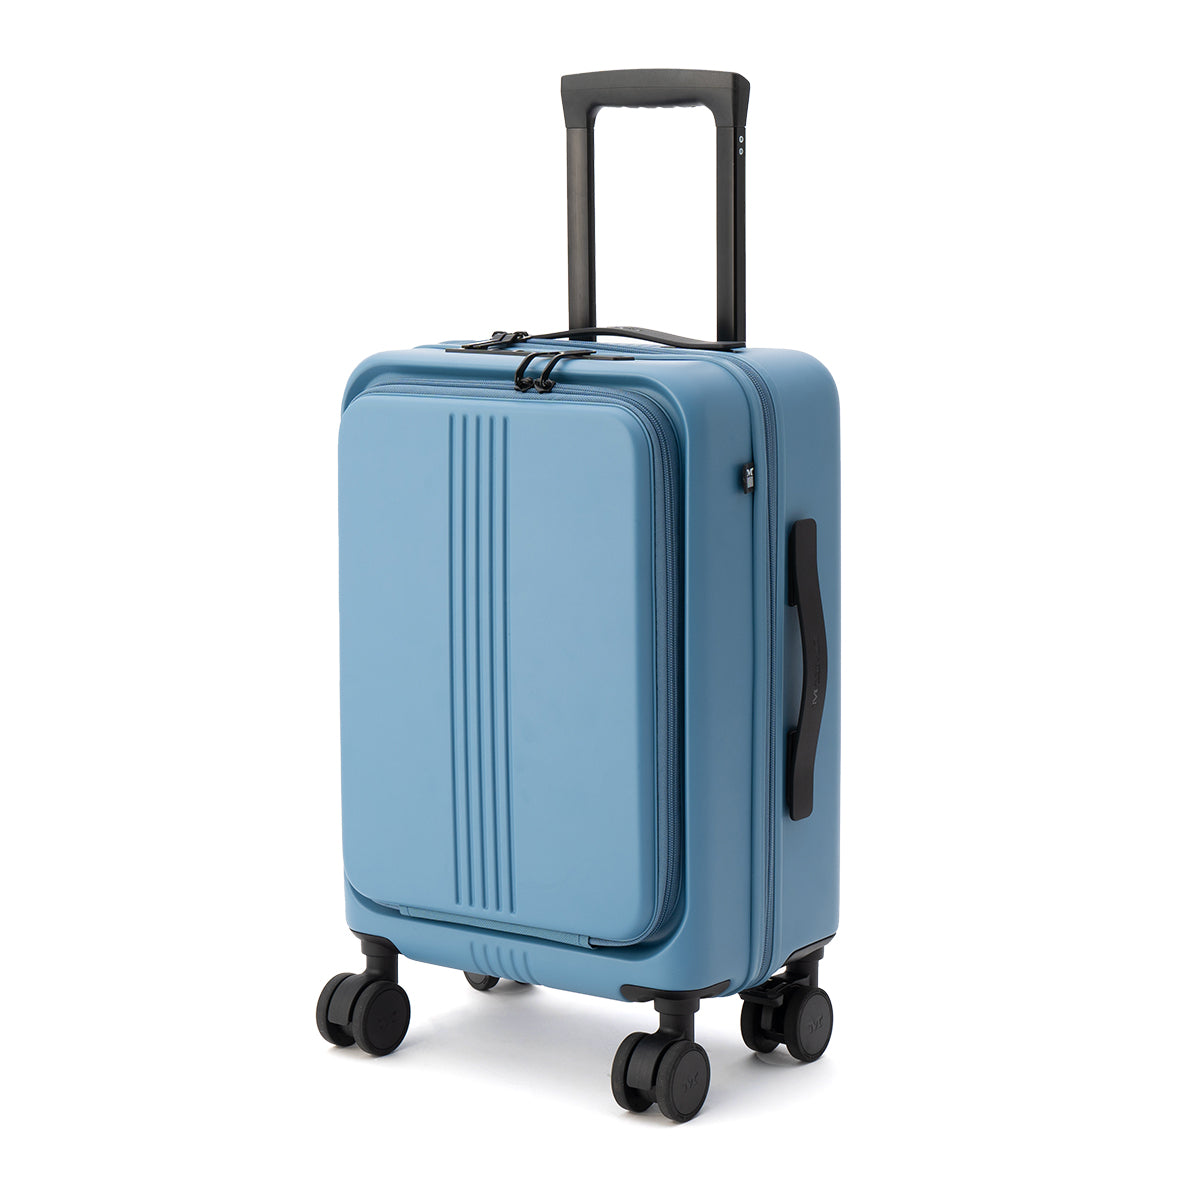 MAIMO スーツケース Mサイズ 62L ベージュ 軽量 3.4kg 大容量 - バッグ